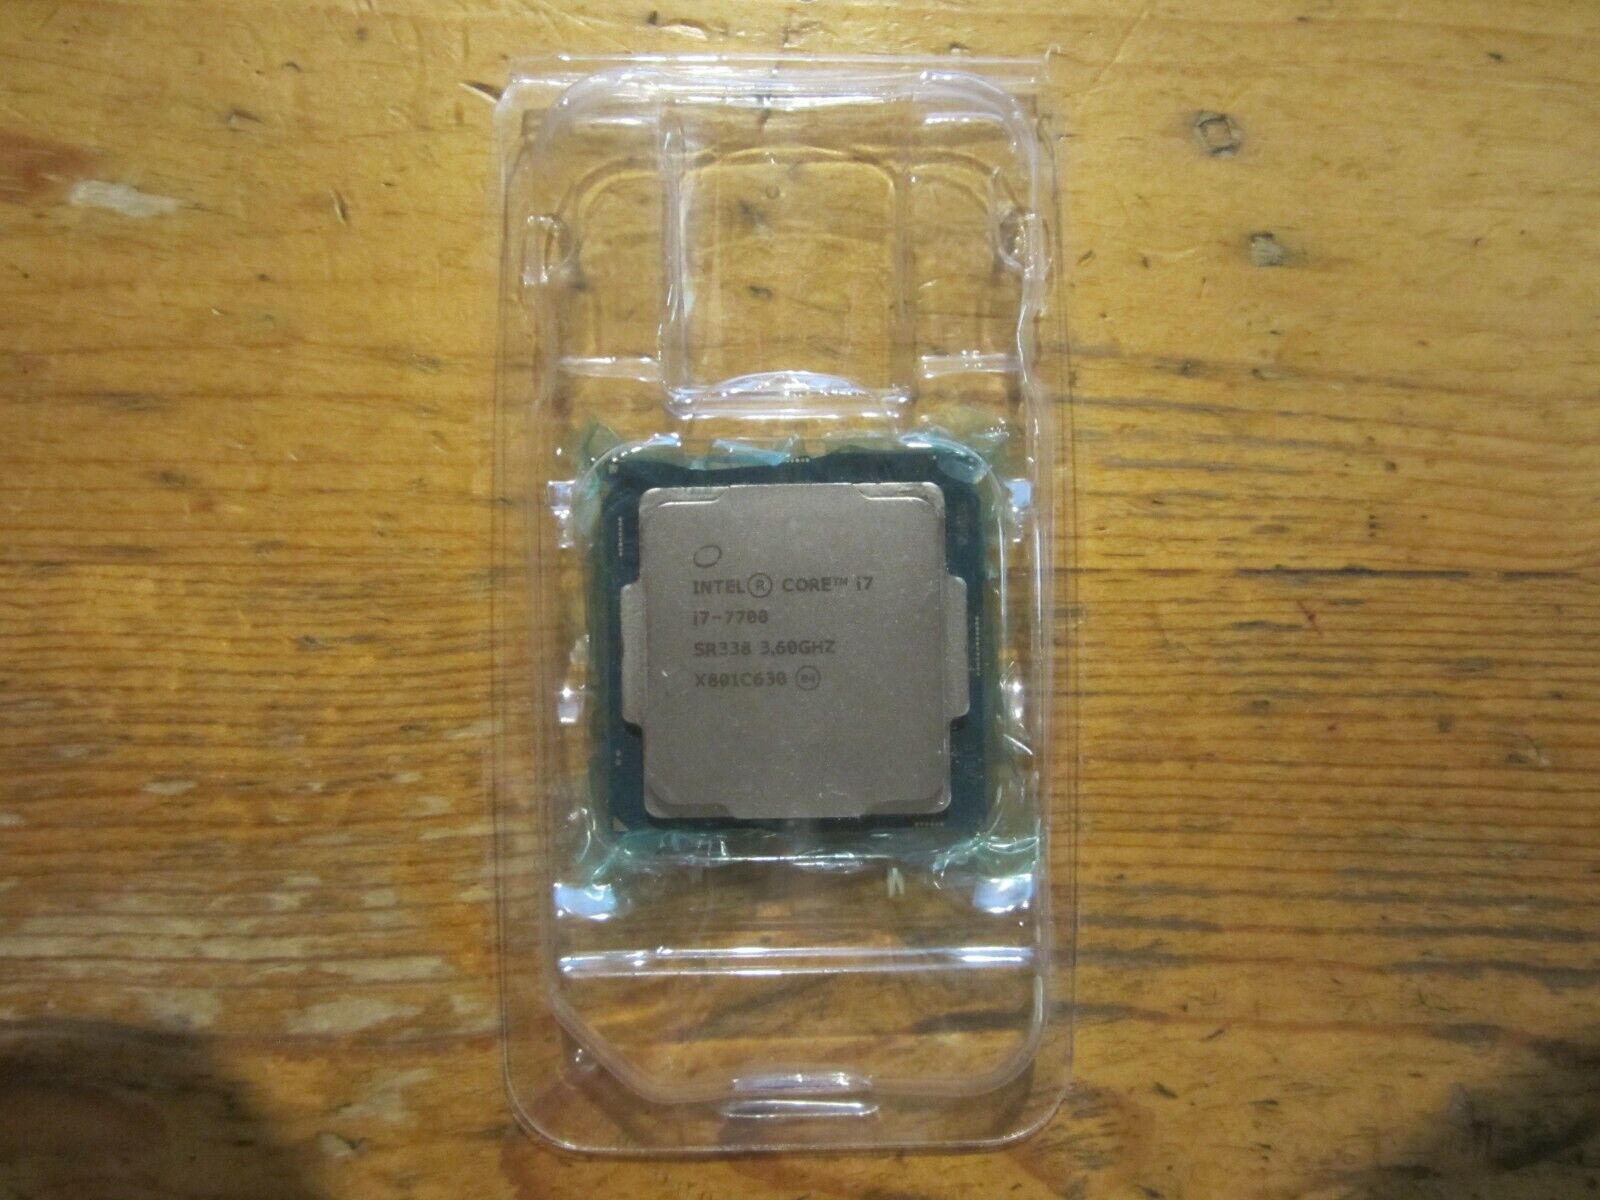 Intel Core i7-7700 SR338 Quad-core 3.60 GHz Processor Socket H4 LGA-1151